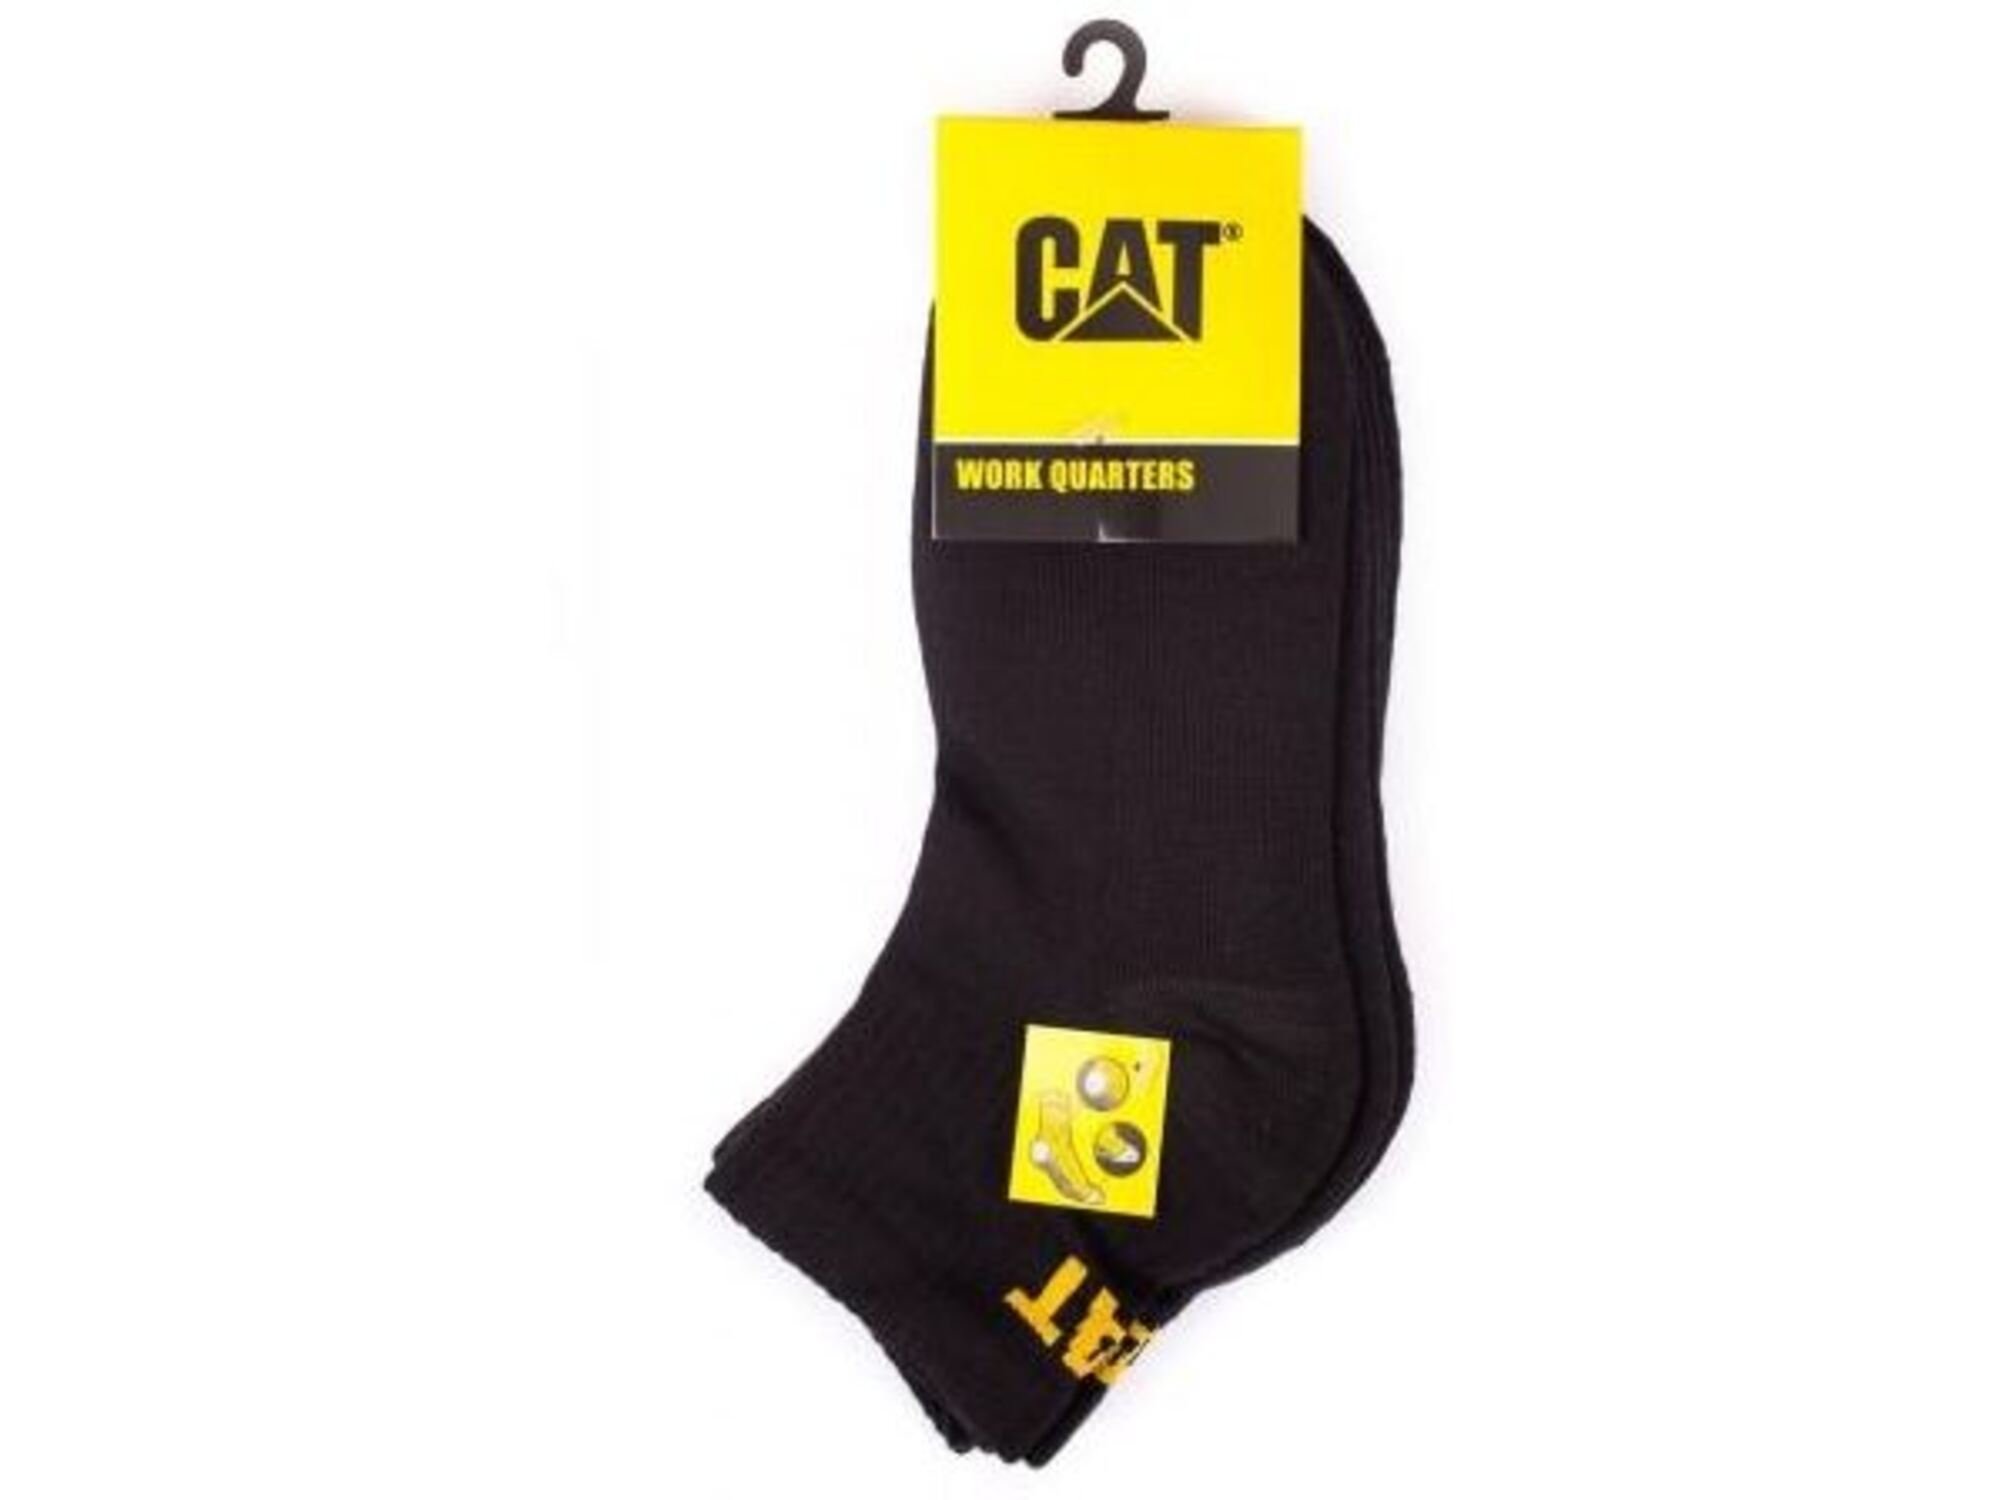 CATERPILLAR moške polvisoke delovne nogavice CAT ZCM0825 39Č št. 39/42 3 pari, črna